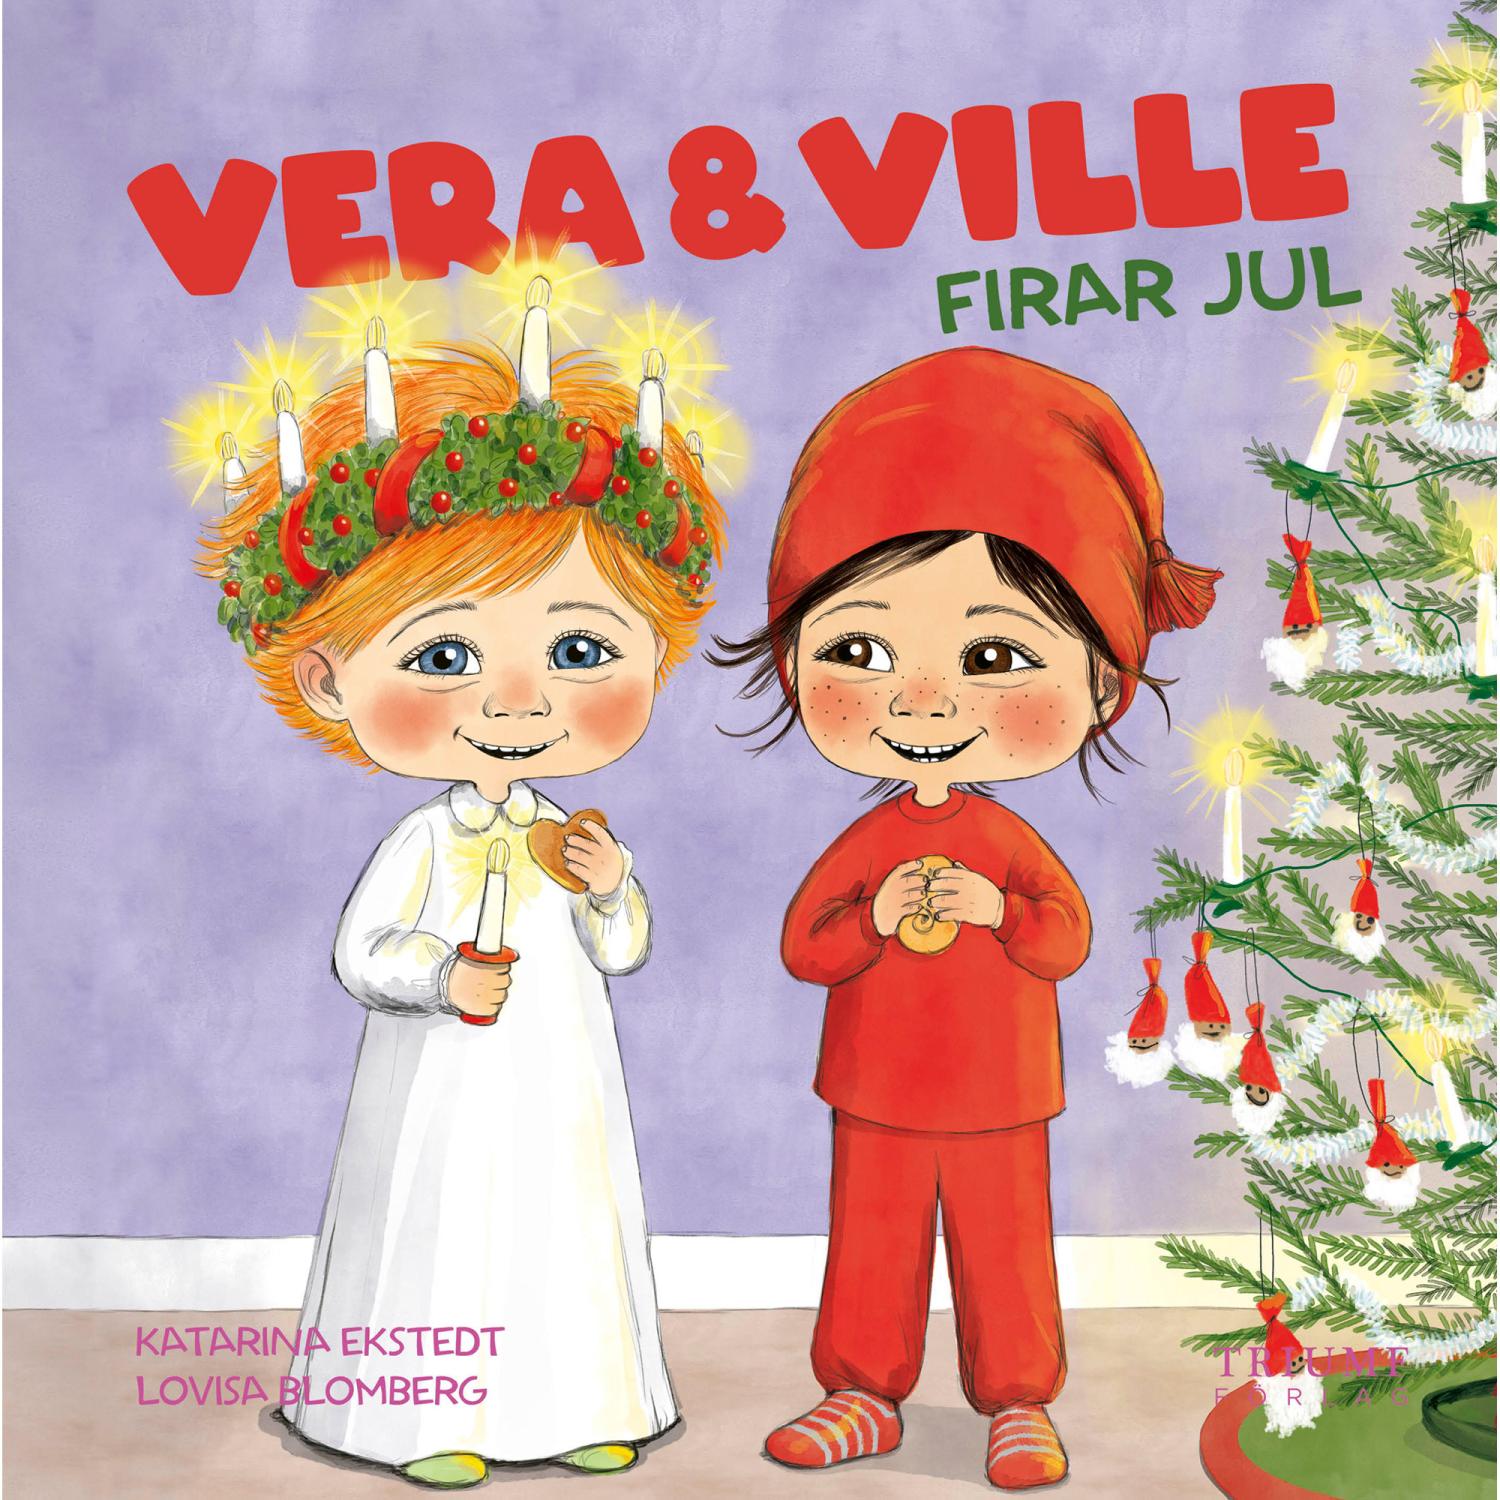 Vera och Ville firar jul